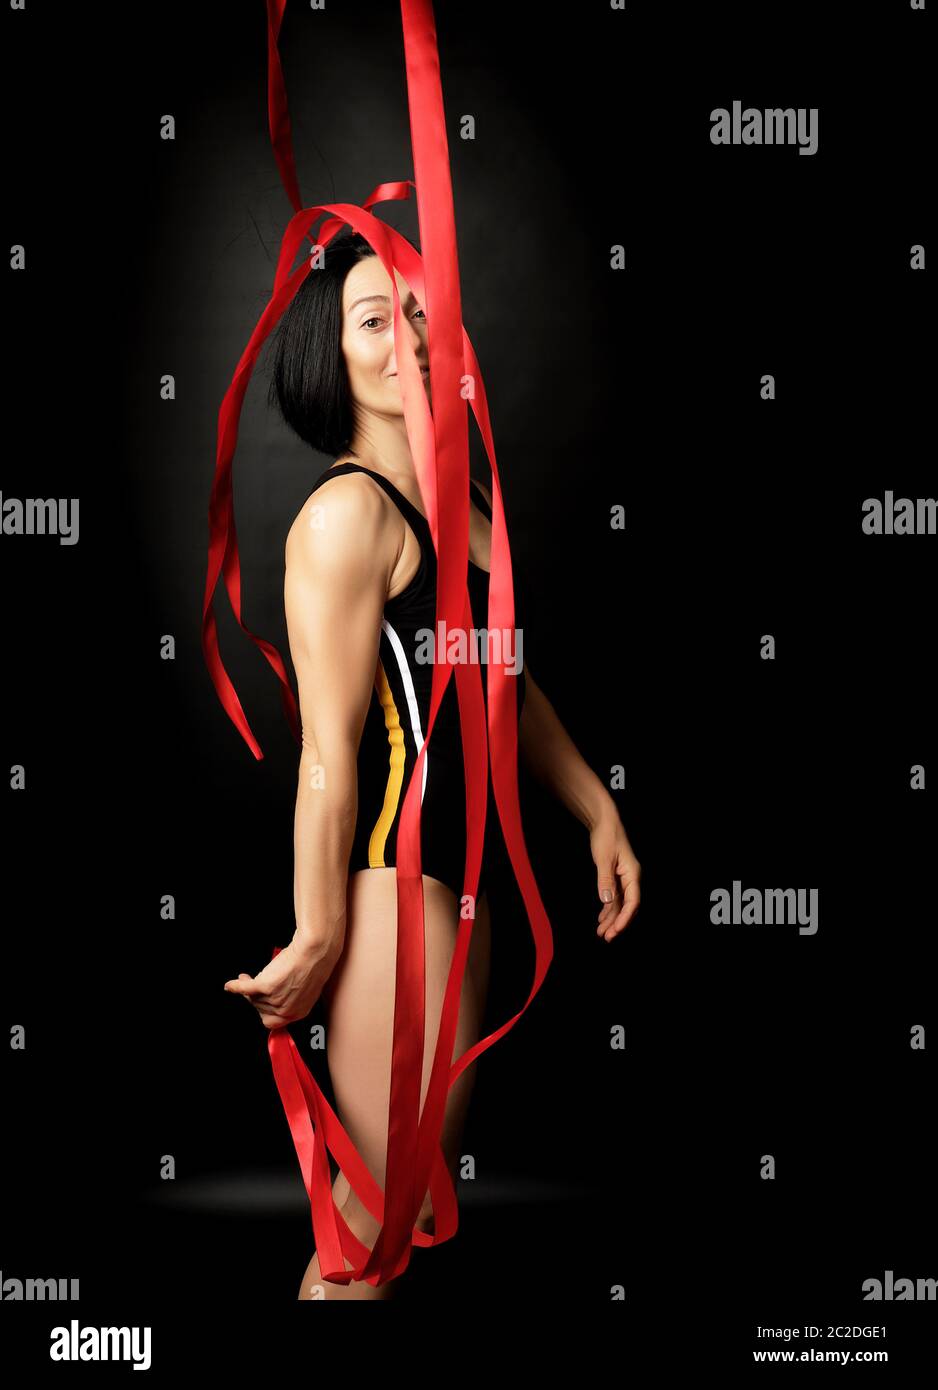 Jeune femme gymnaste de blancs avec des cheveux noirs d'apparence de rubans de satin rouge tours gratuits, des exercices de gymnastique sur fond noir Banque D'Images